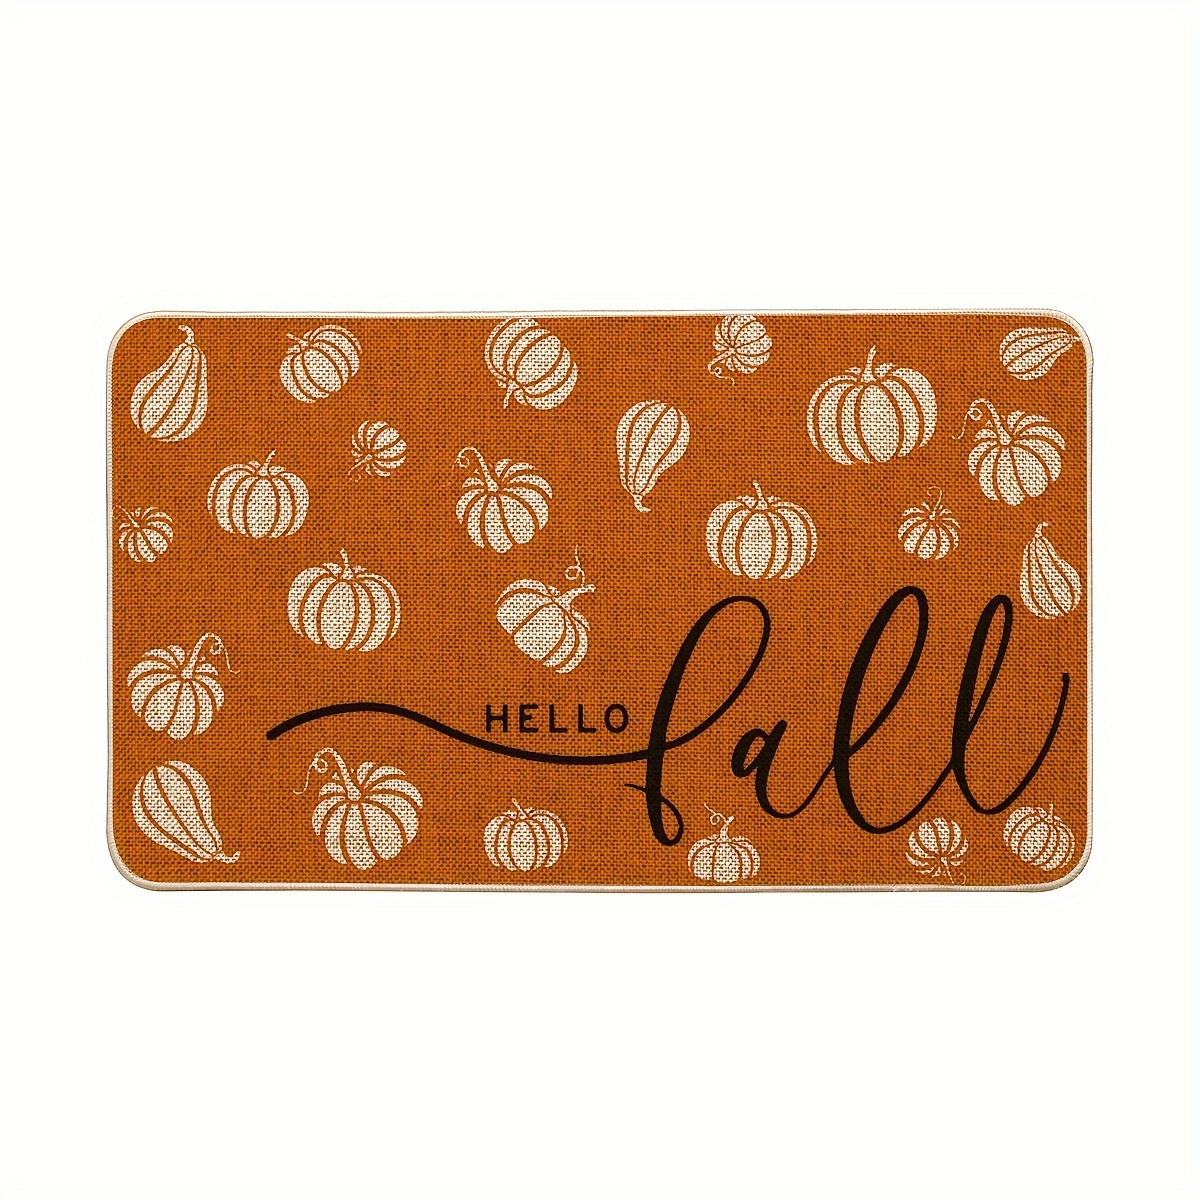 

Sm:)e Orange Pumpkins Hello Fall Doormat, Autumn Home Decor Low-profile Switch Rug Door Mat For Indoor Outdoor